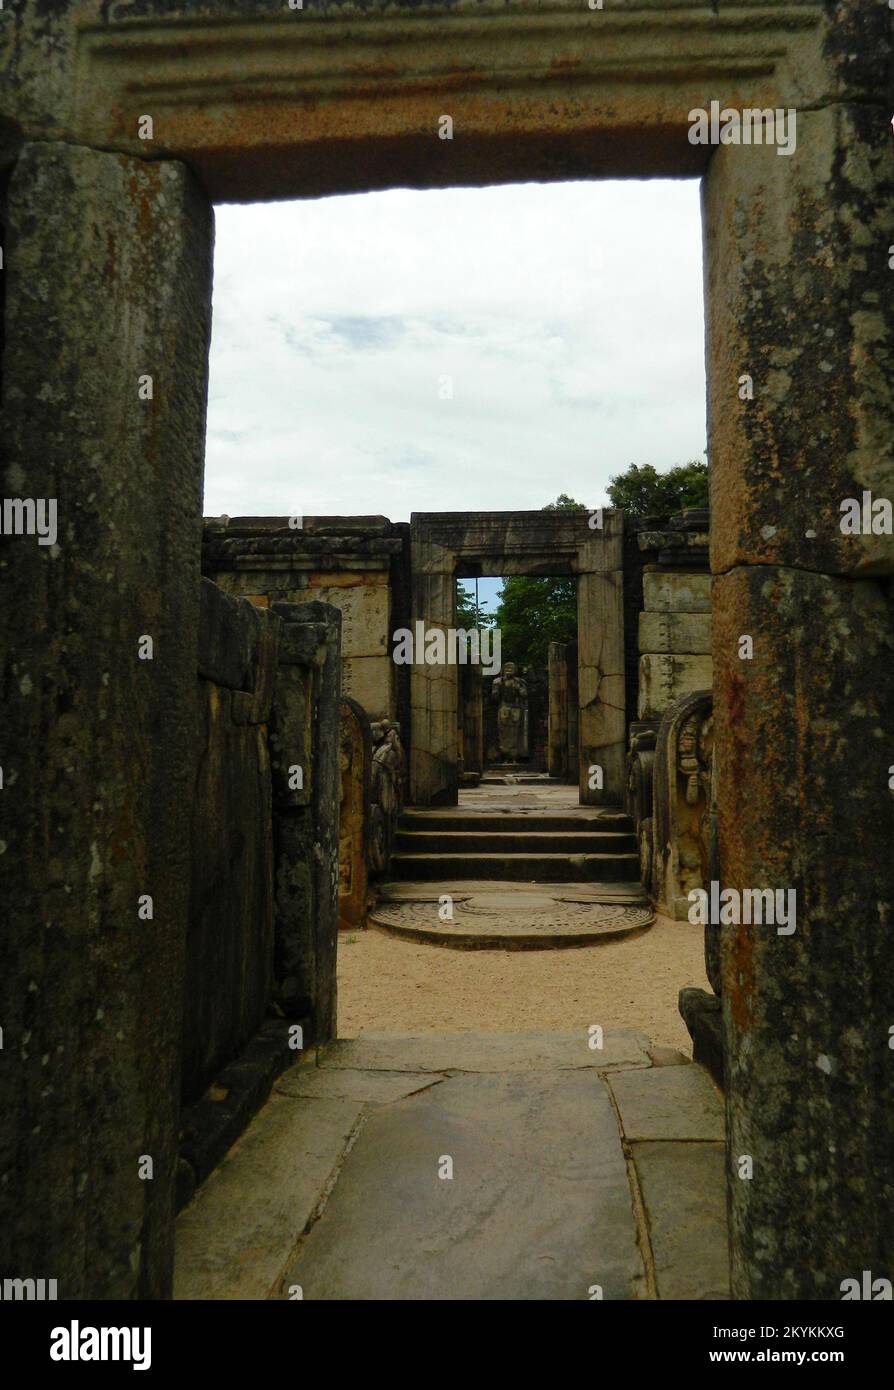 Polonnaruwa ist das zweite Königreich des antiken Sri Lanka. König Parakramabahu 4 entwickelte viele Wewas und Tempel und etablierte die Lebensgrundlage des Landes. Das Polonnaruwa Lankathilaka Image House ist ein monolithisches Buddha Image House, das auch von König Parakramabahu aus Ziegeln erbaut wurde. Die Außenwände sind mit aufwändigen Designs und Schnitzereien bedeckt. Die goldene Ära wurde von König Maga durch die Invasion und Zerstörung der Tempel und Schreine des Königreichs ruiniert. Polonnaruwa, Sri Lanka. Stockfoto